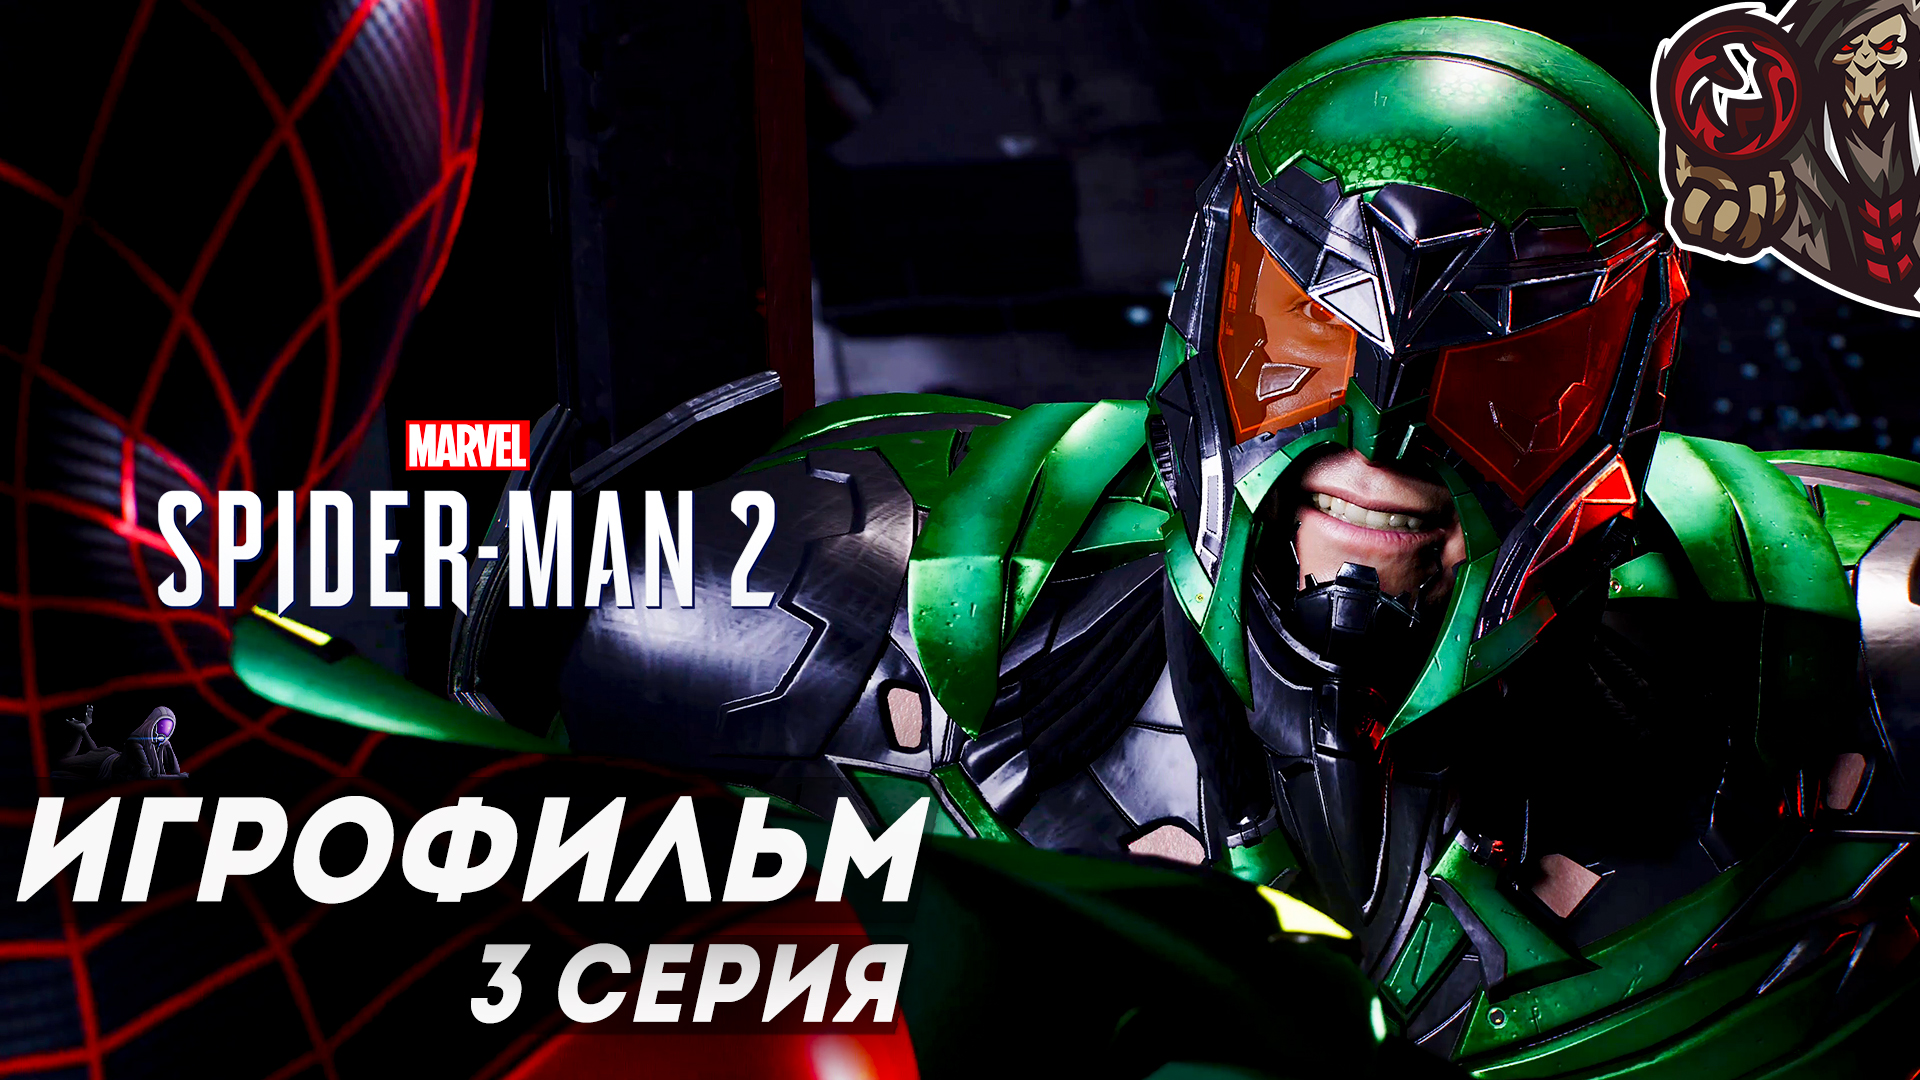 Marvel’s Spider-Man 2. Игрофильм (русская озвучка) #3 (12)